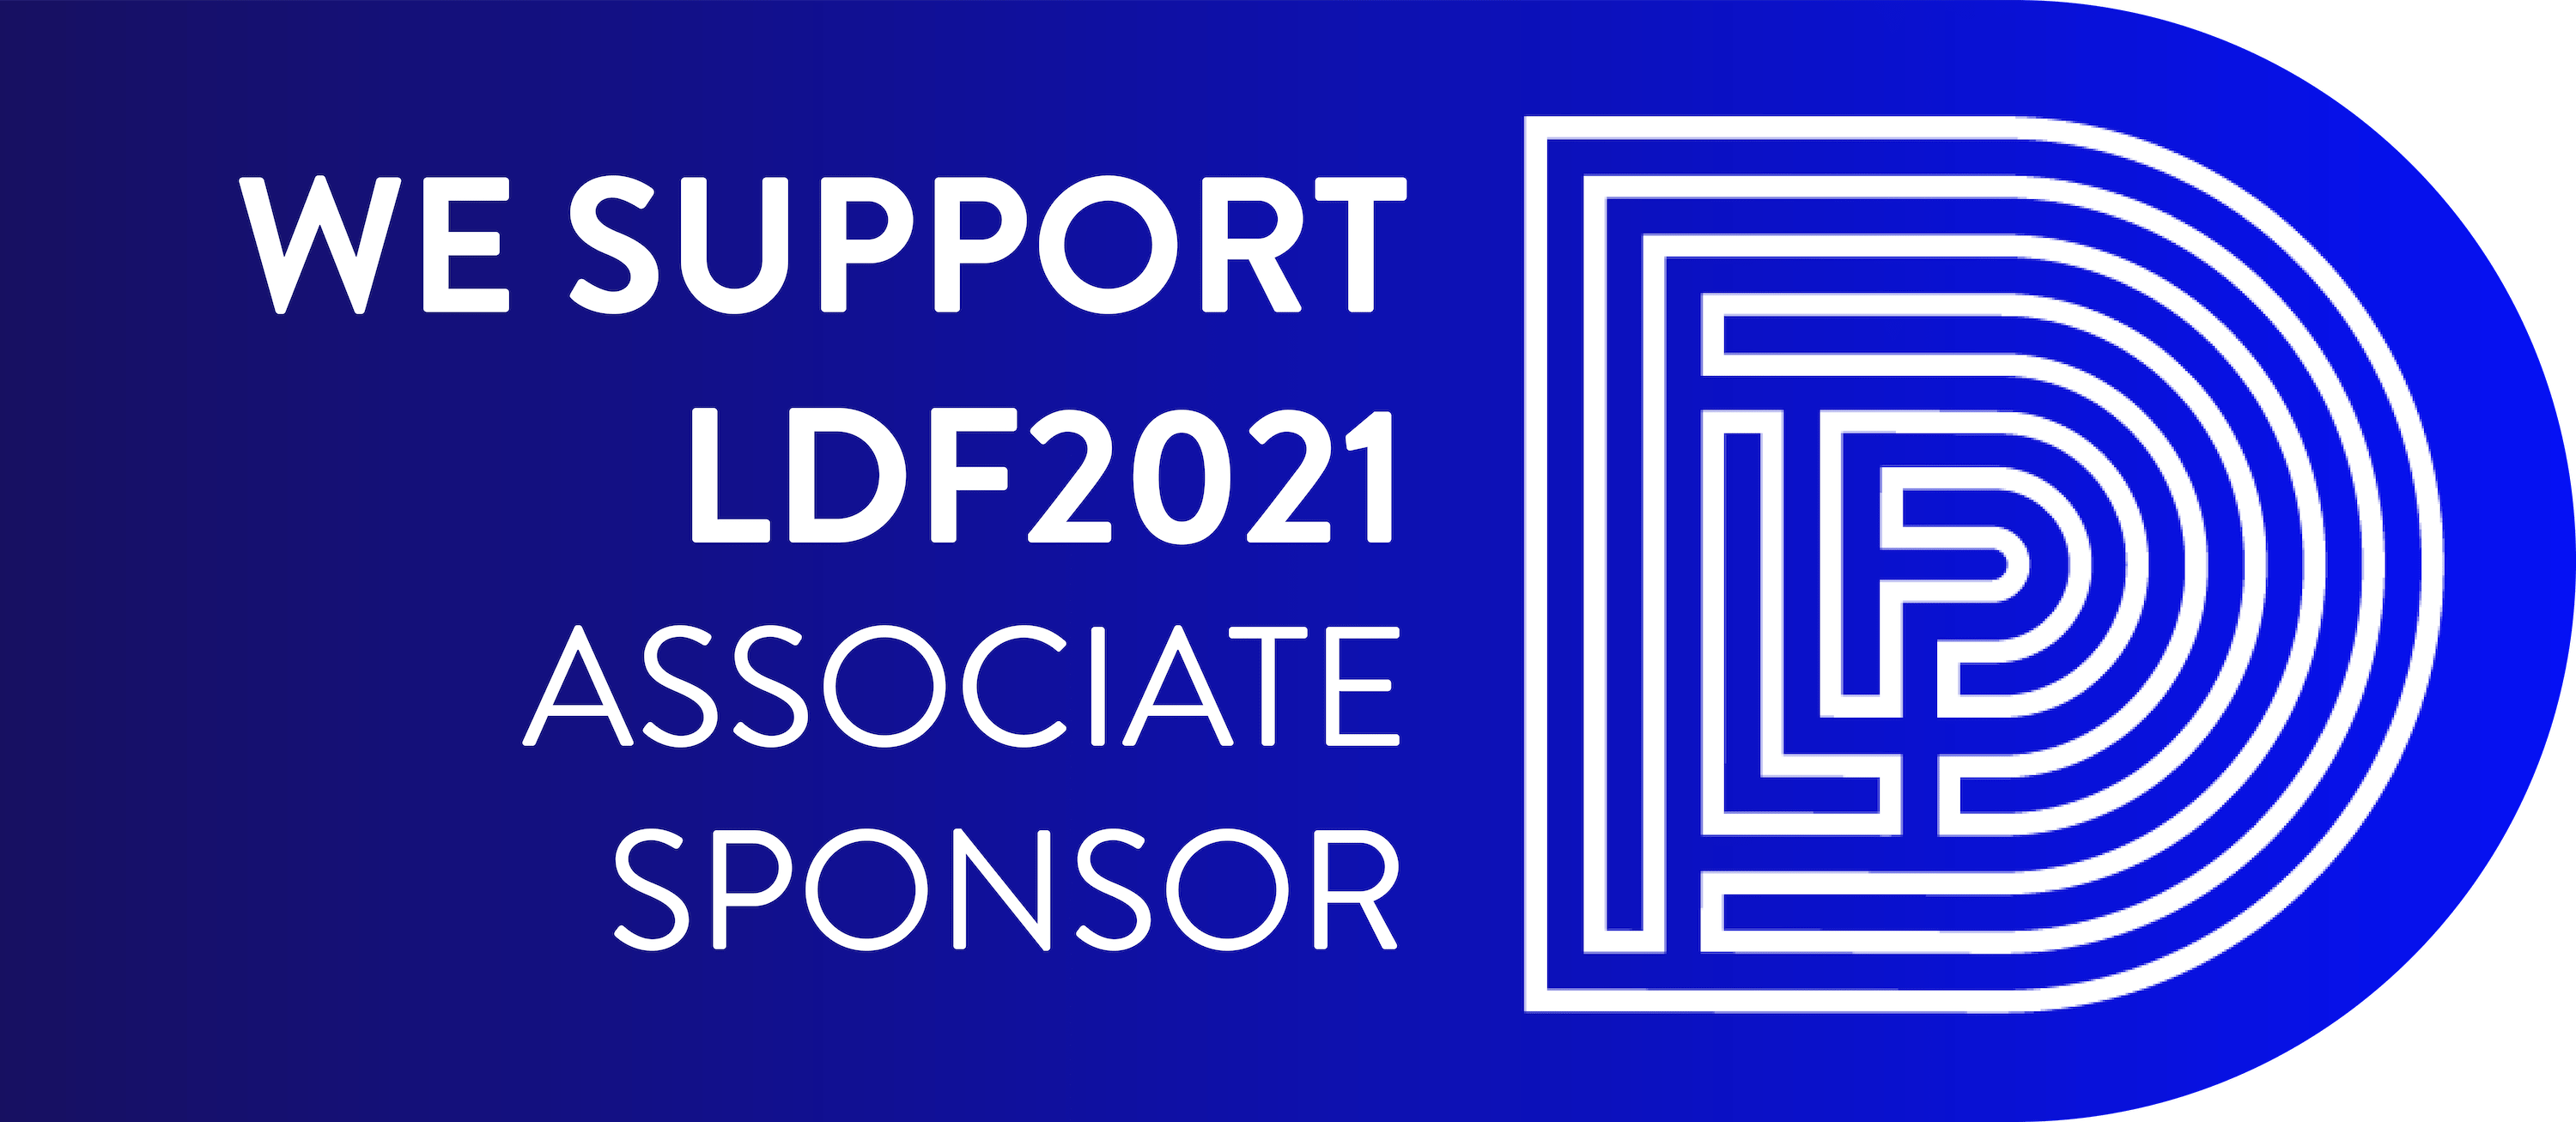 Leeds Digital Fest official sponsor banner